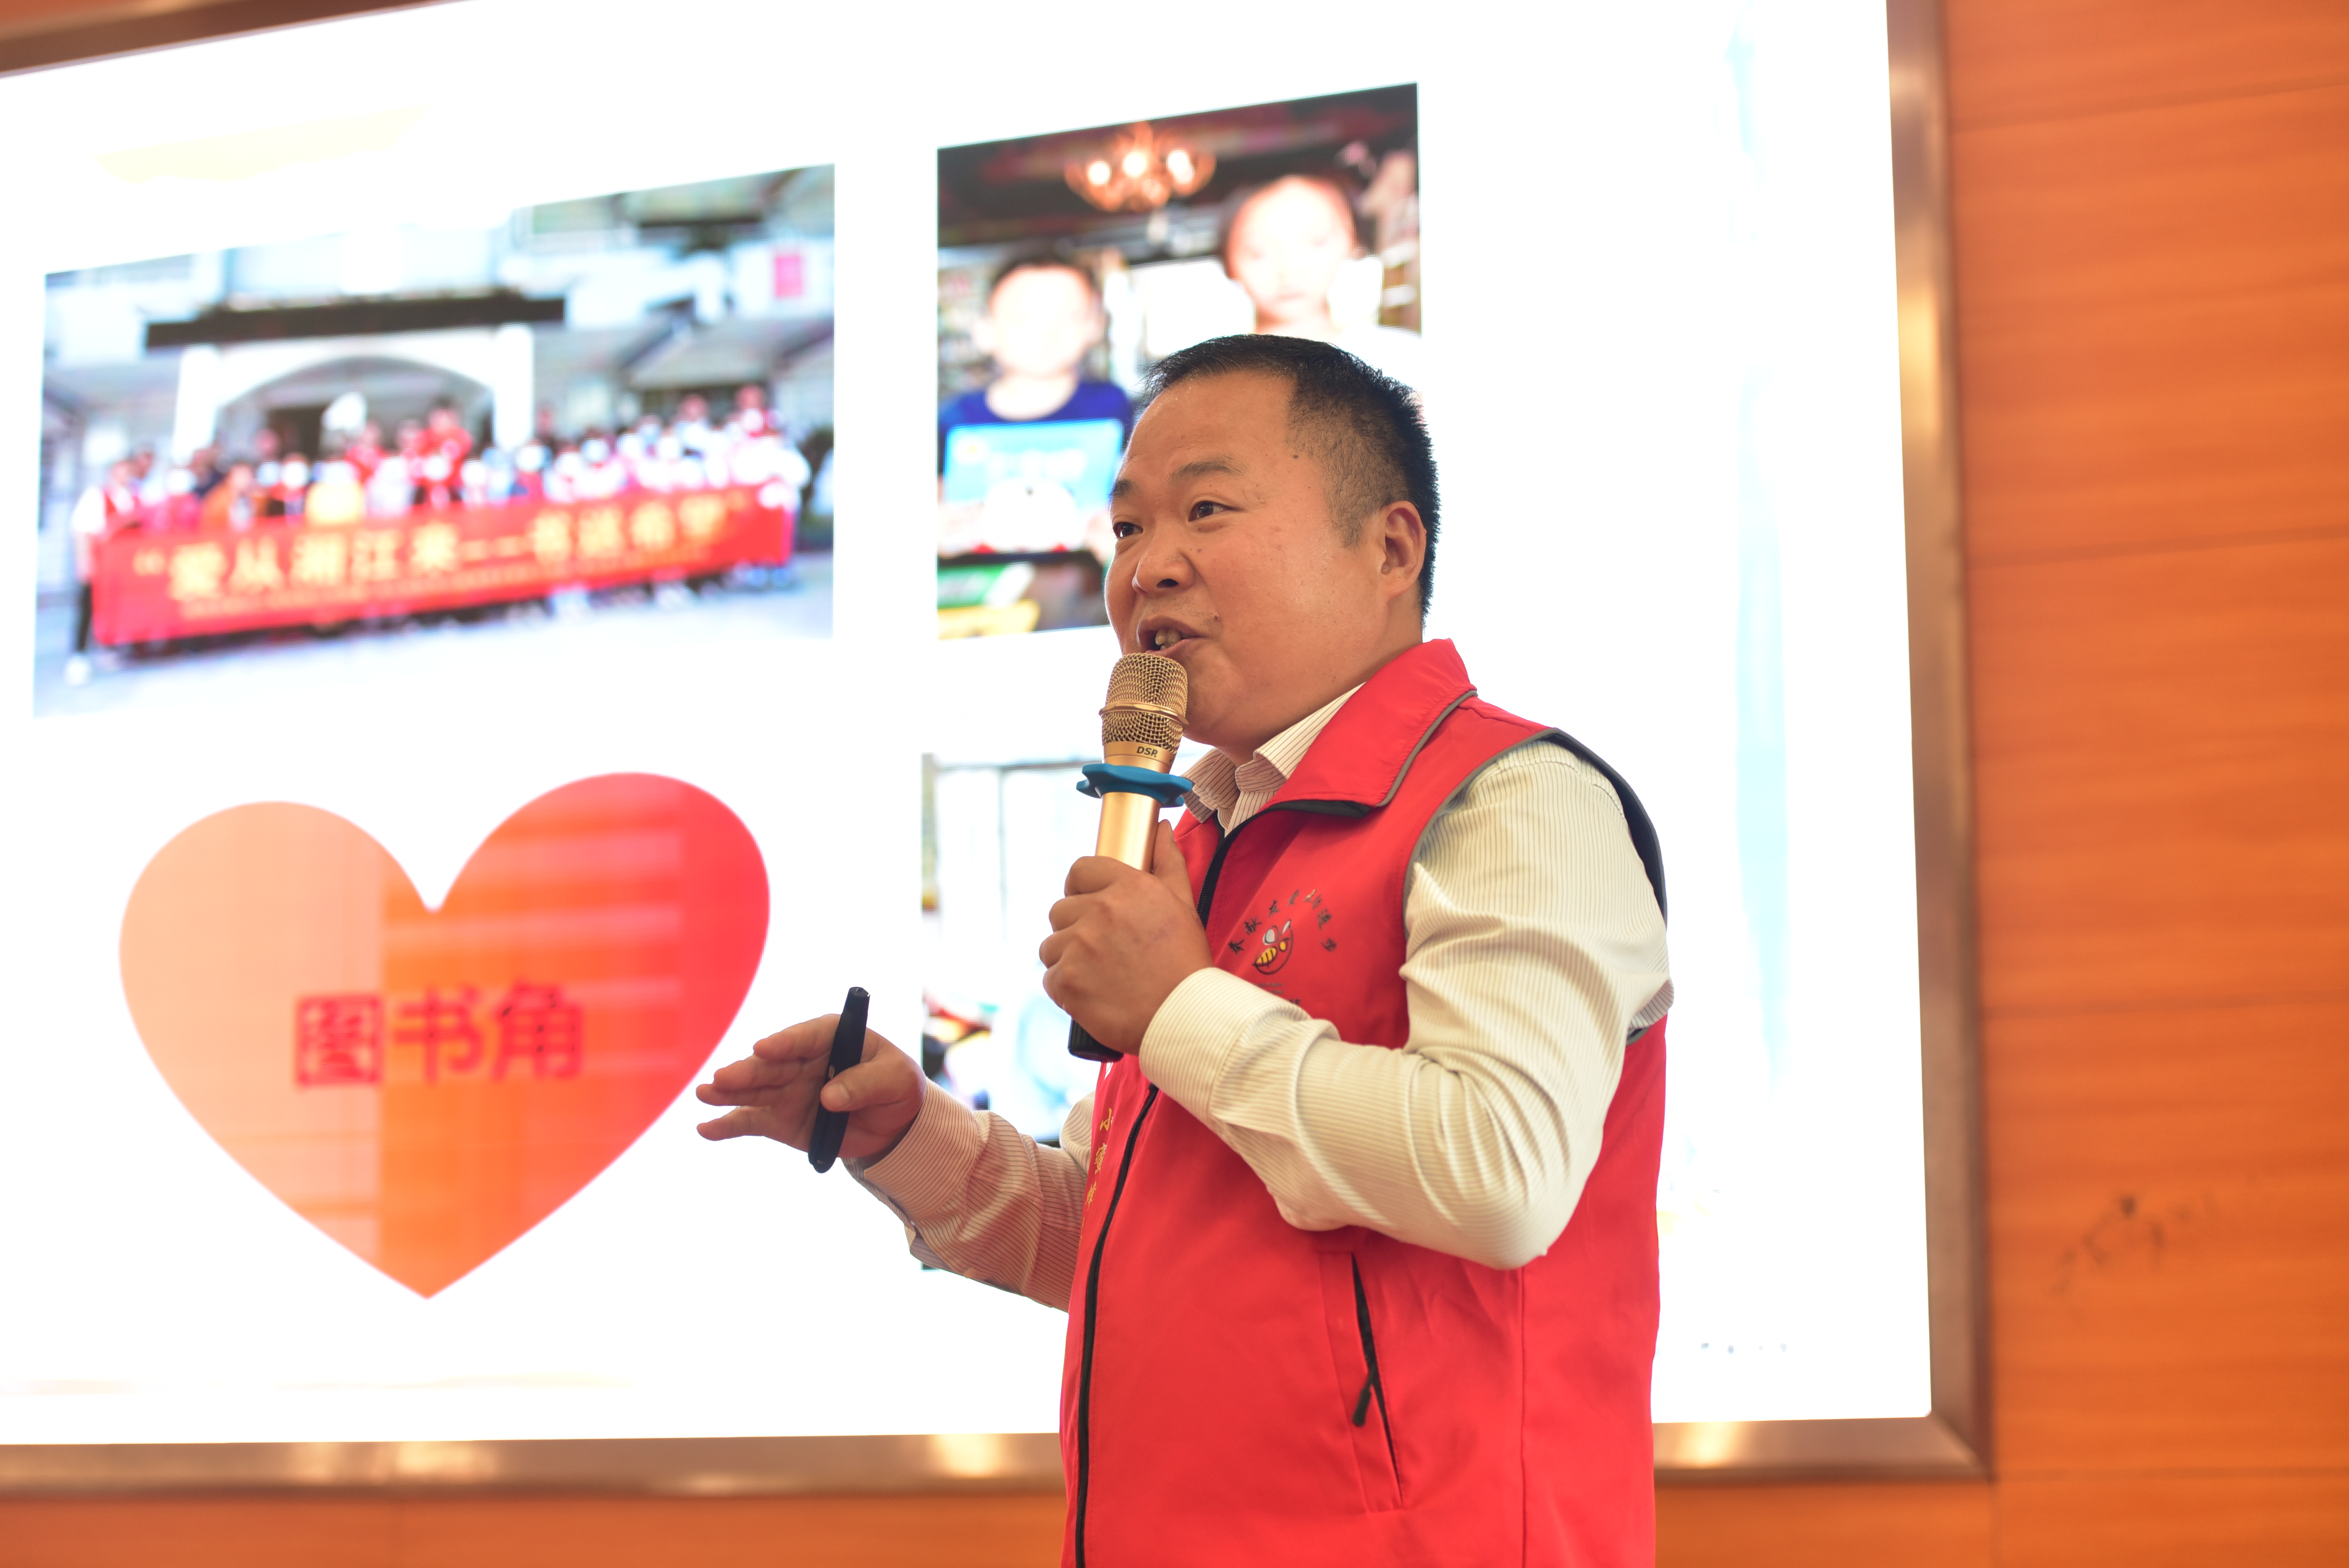 杨士泉讲述自己和志愿者们开展志愿服务的故事。